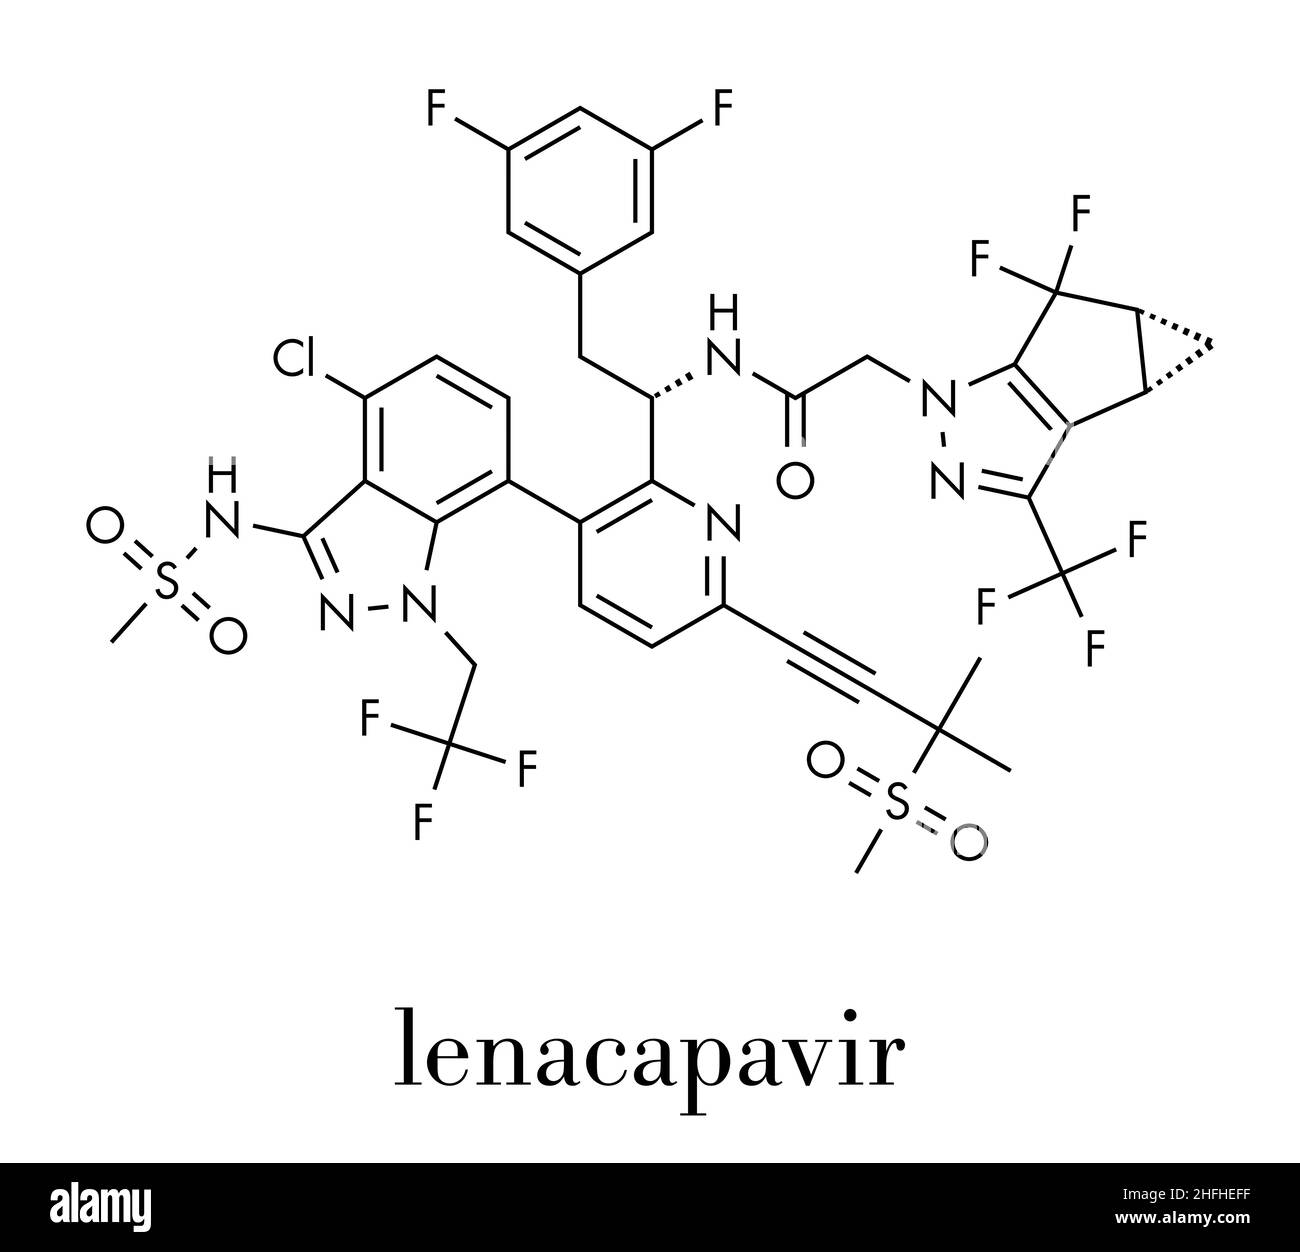 Lenacapavir antivirales Medikamentenmolekül. Skelettformel. Stock Vektor